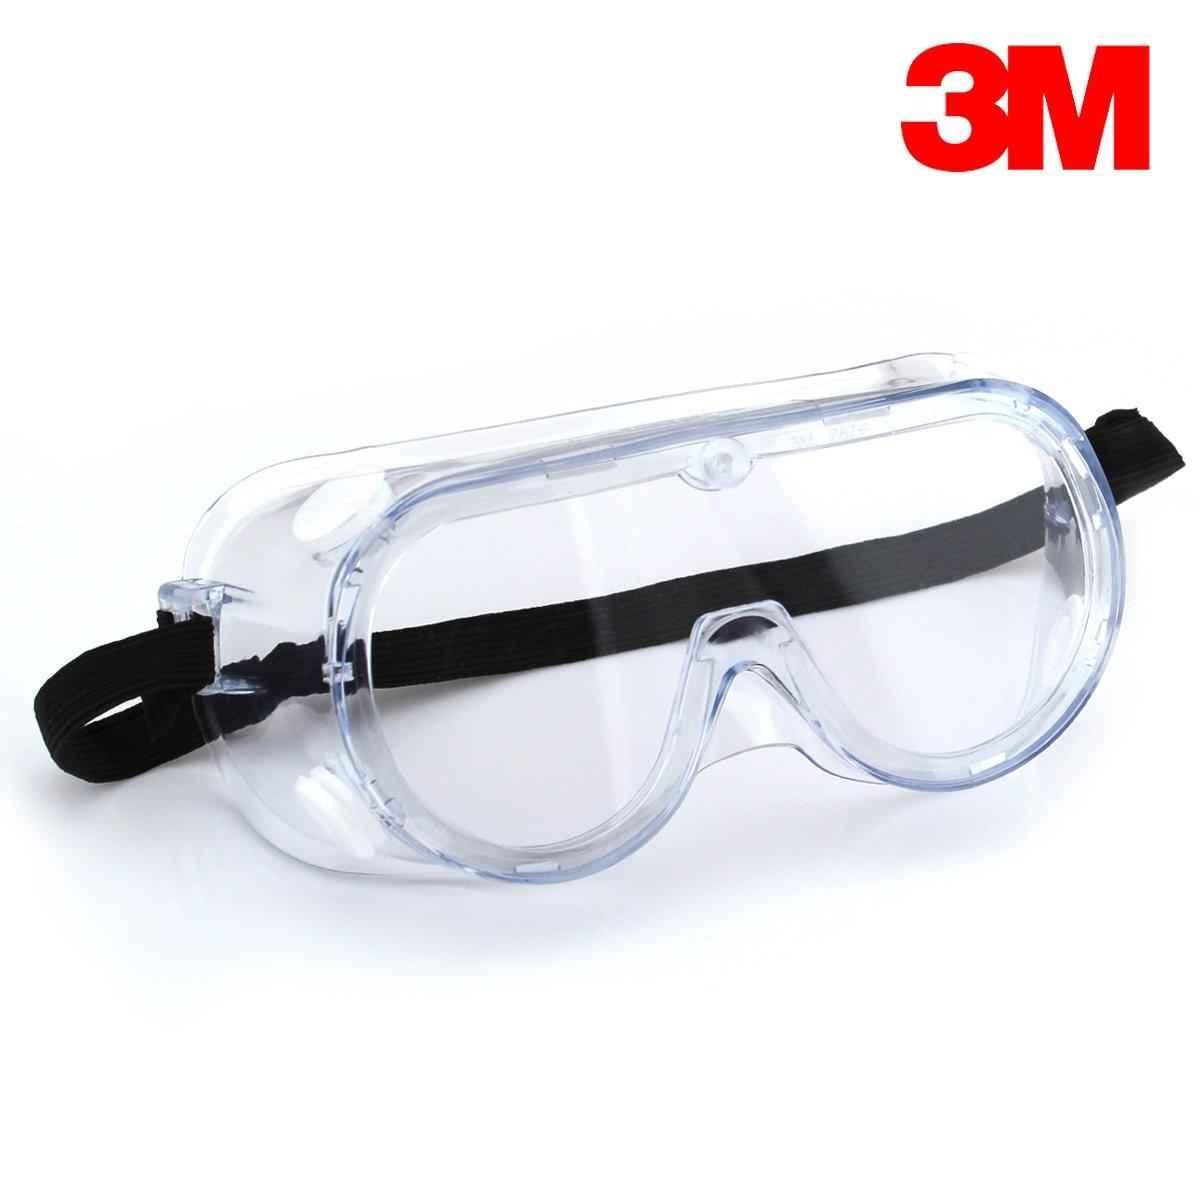 Тест защитных очков. Очки защитные Uvex UV 9 С регулируемыми дужками. Chemical Safety Goggle-3m 1621. 7146000002 3m зеркальные очки защитные. Очки 3м z87.